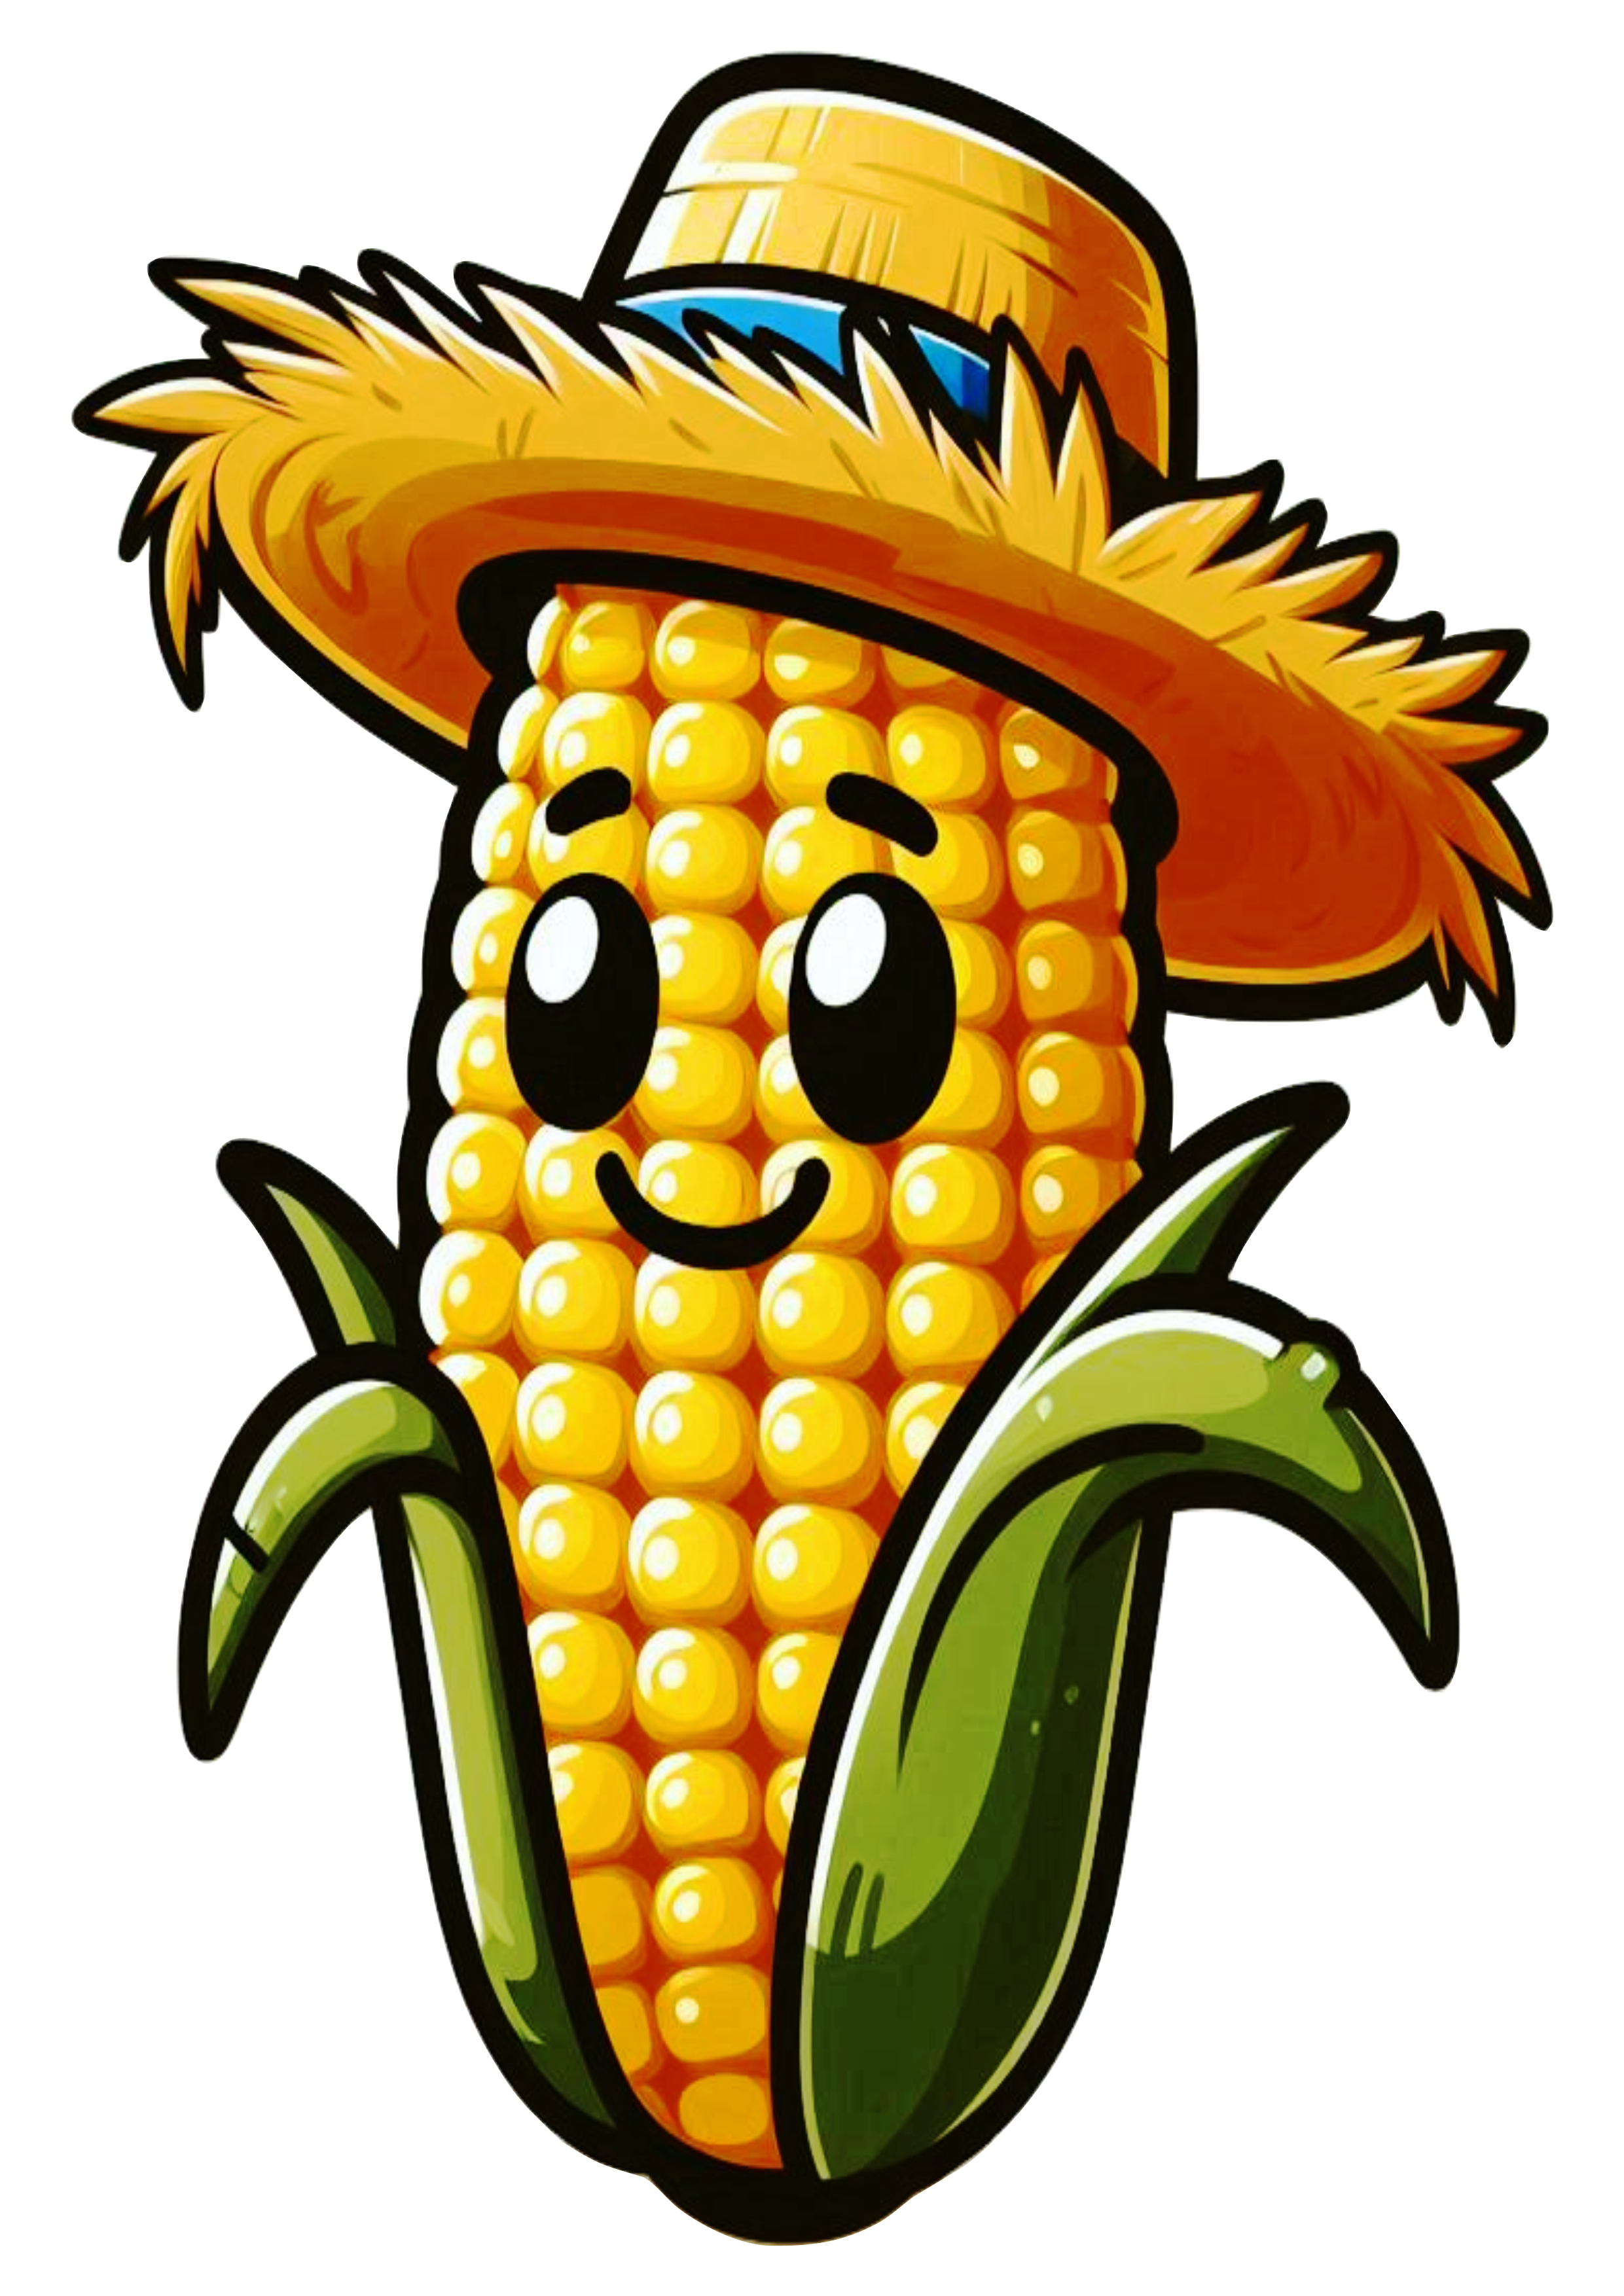 Imagens de festa junina png espiga de milho com chapéu de palha desenho simples cartoon free design fundo transparente ilustração